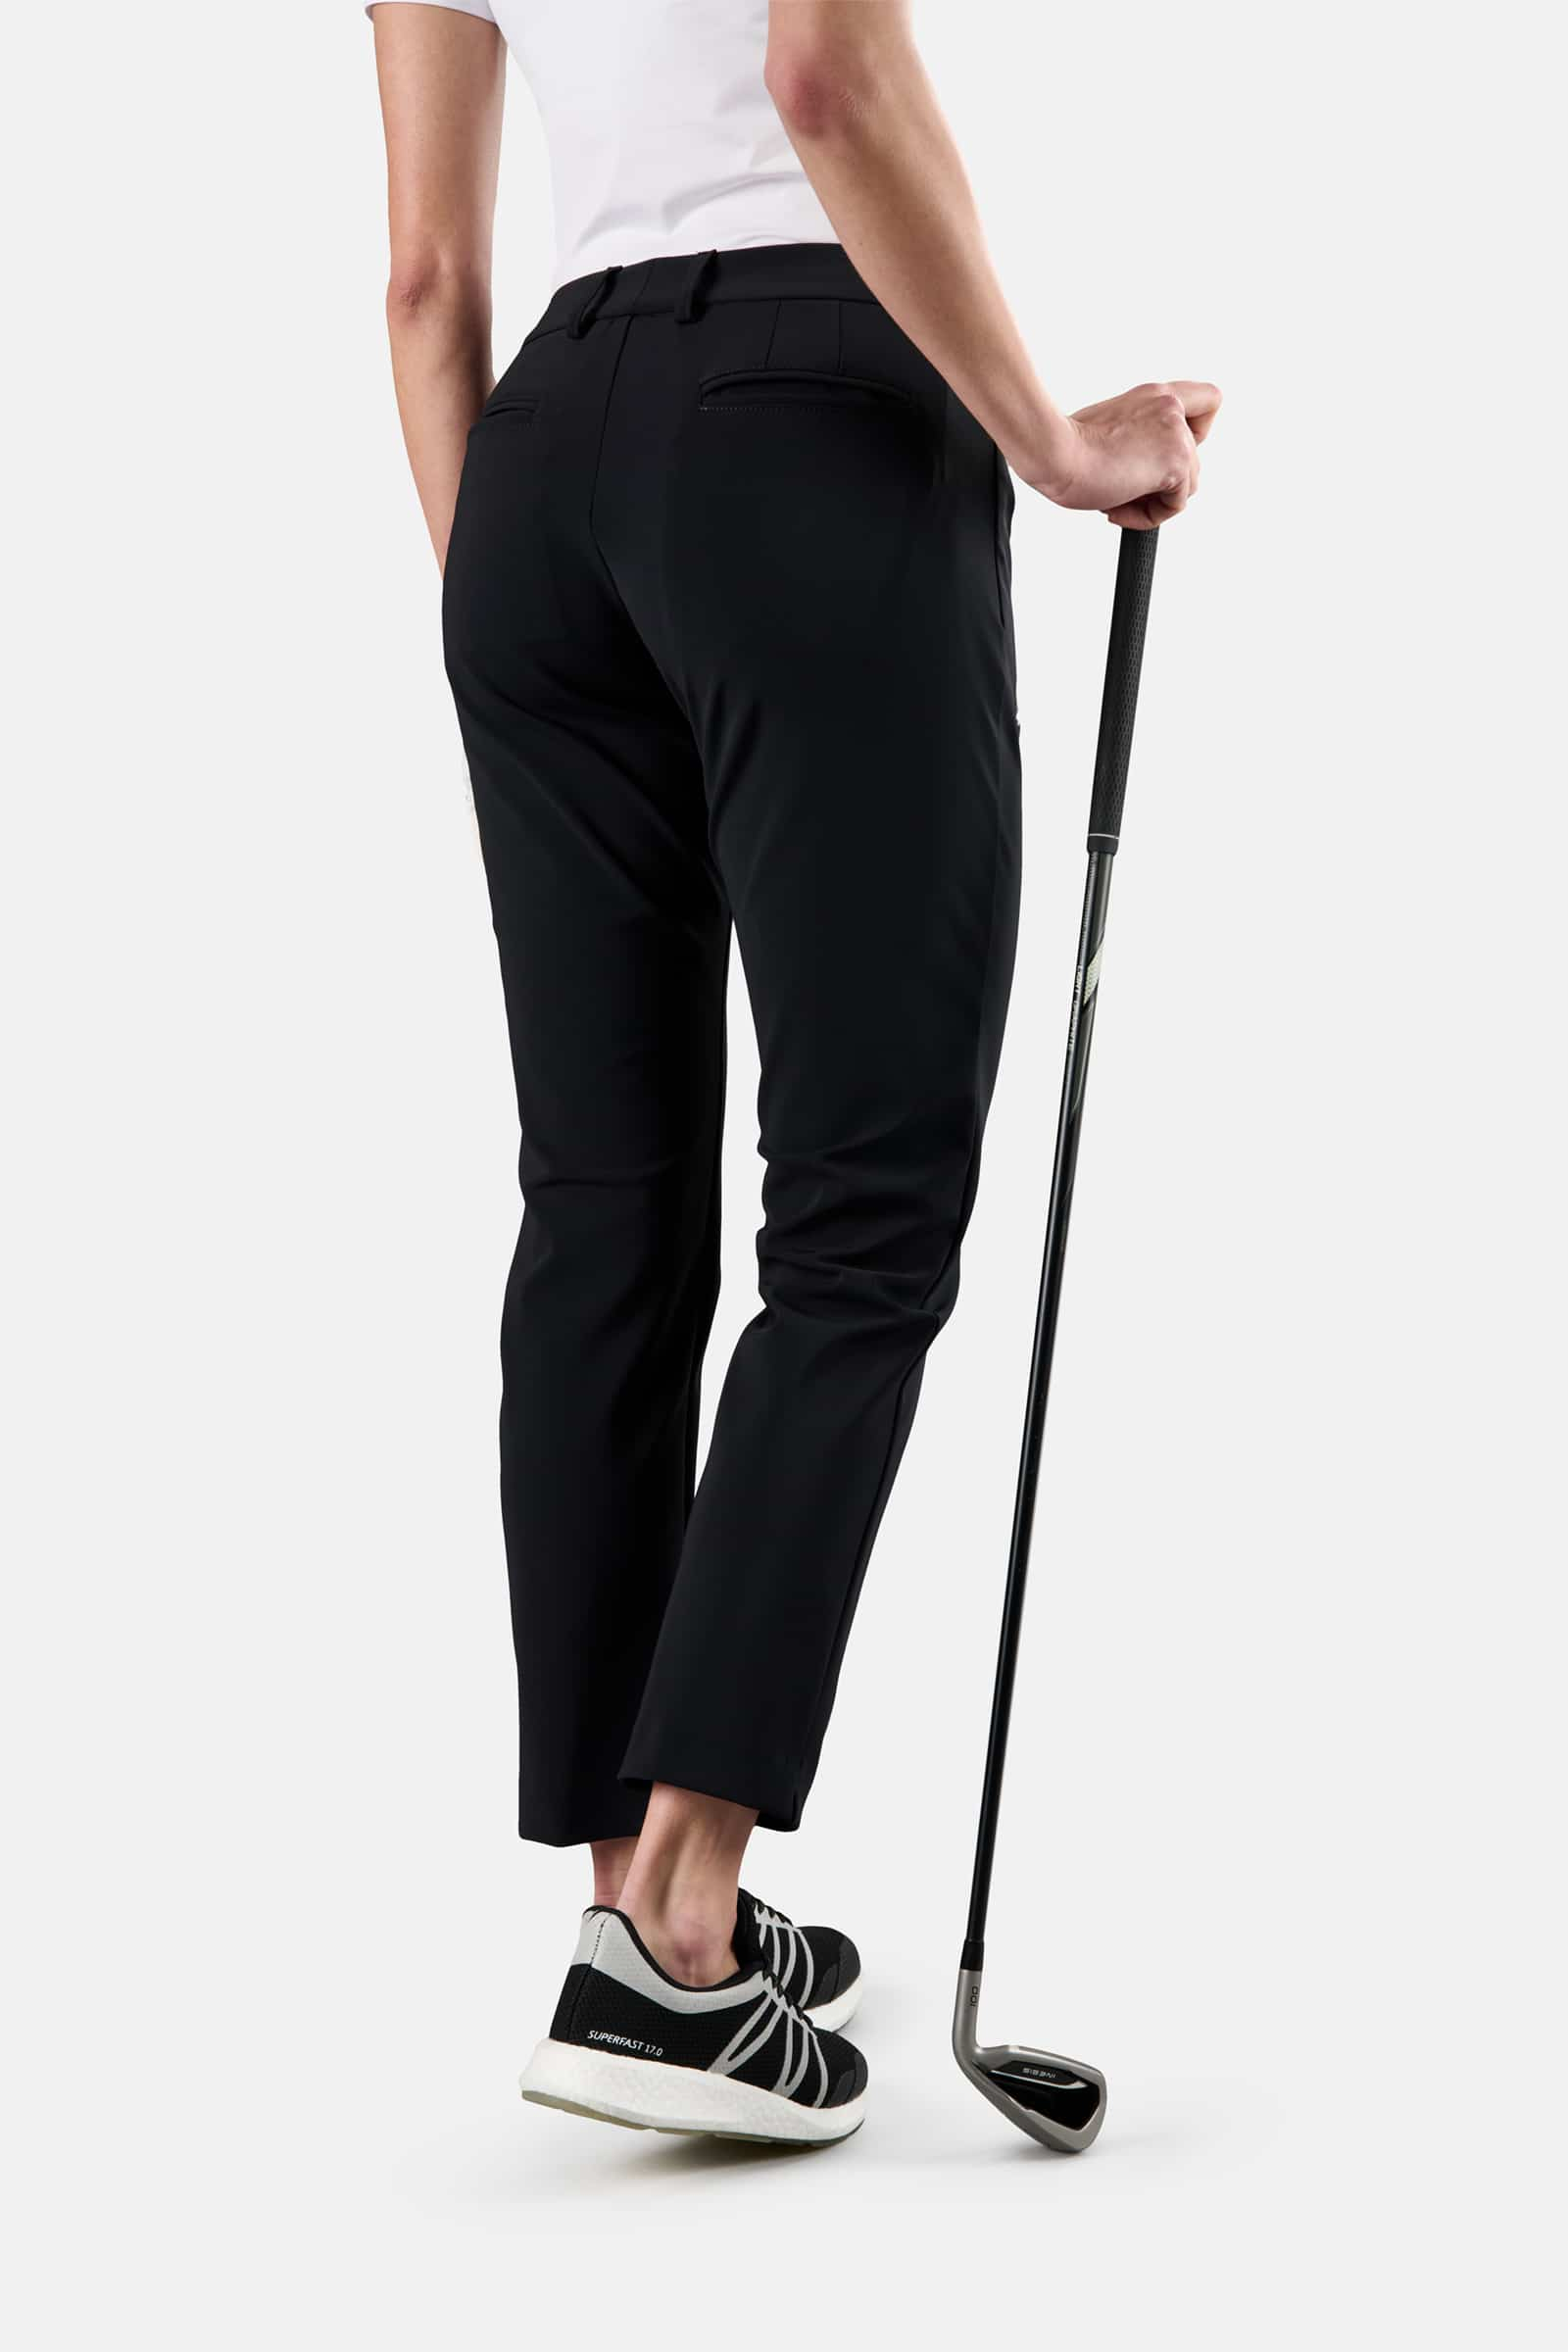 WINTER GOLF TECH PANTS - BLACK - Hydrogen - Luxury Sportwear